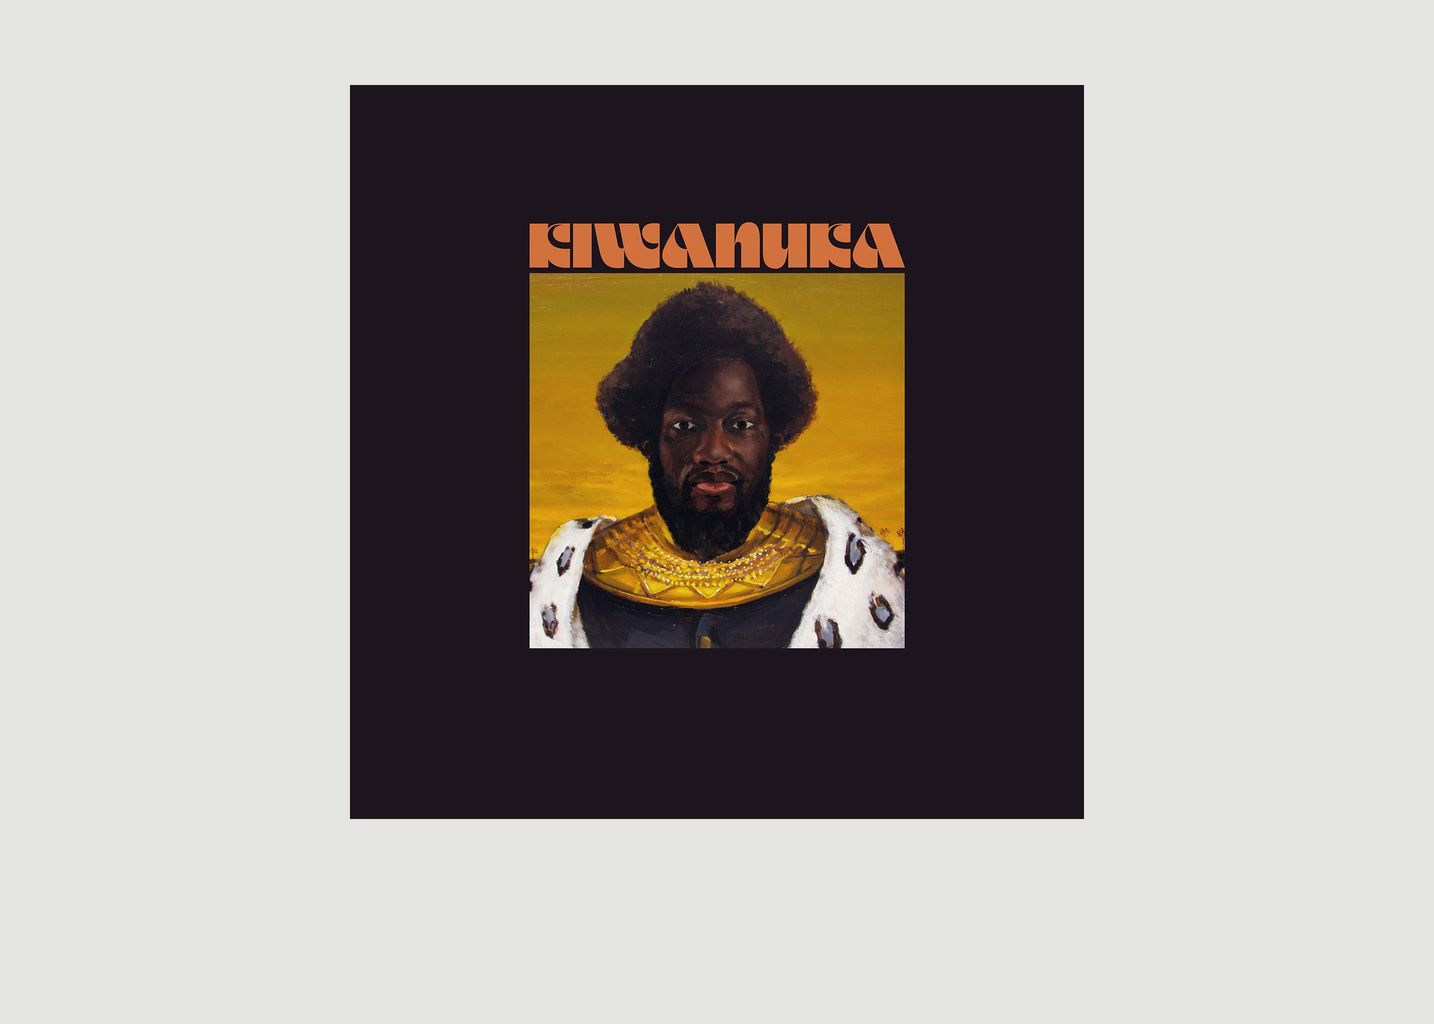 La vinyl-thèque idéale Kiwanuka Michael Kiwanuka